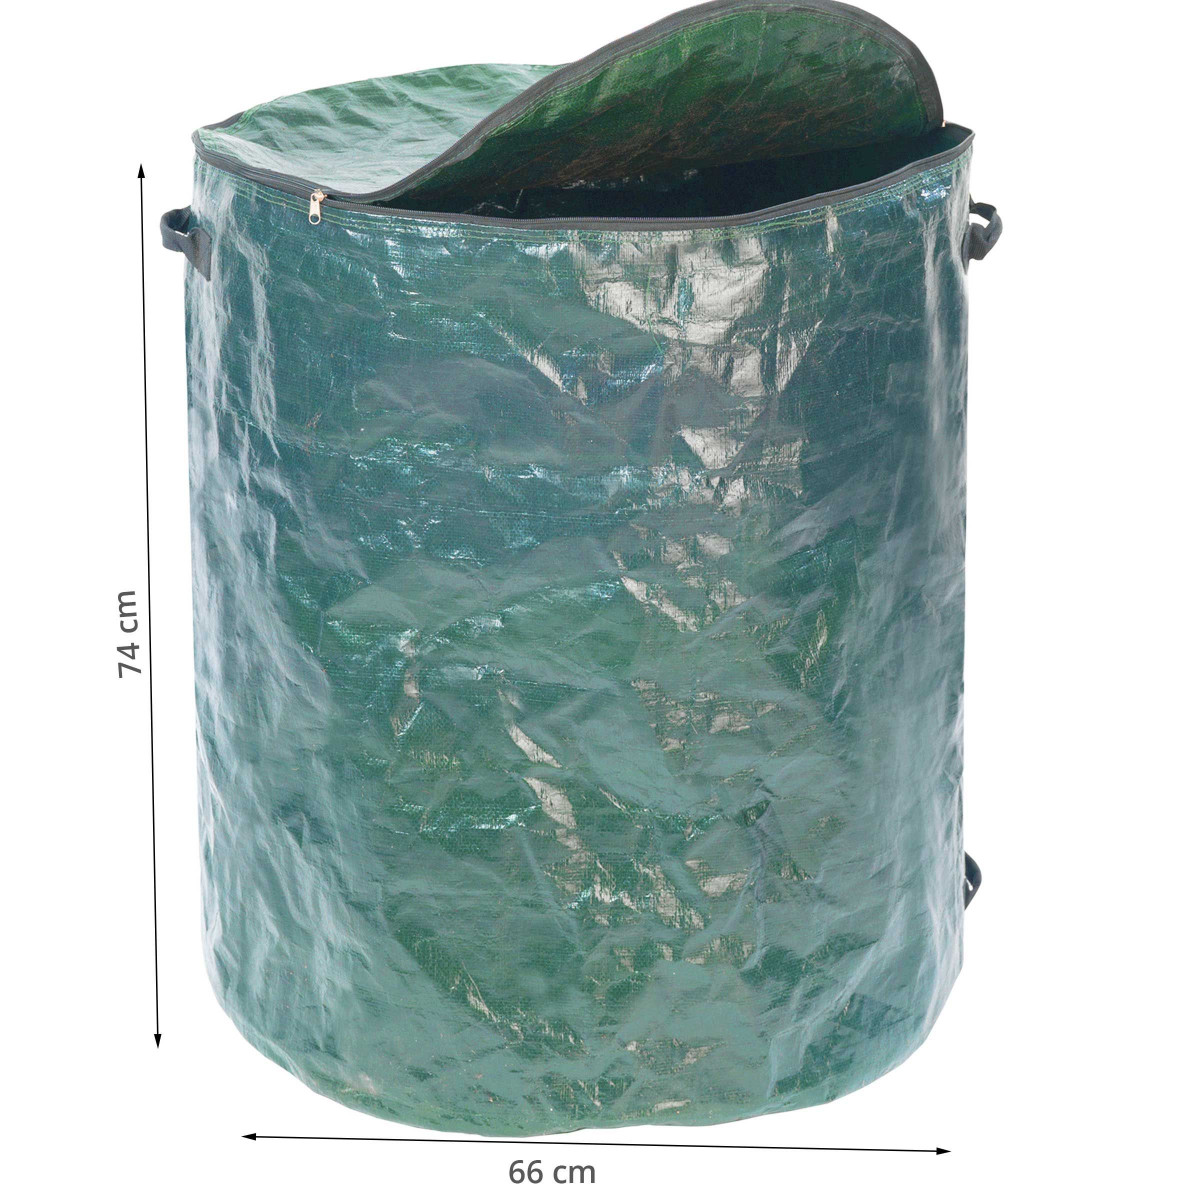 Depuis le 1er juin, les sacs à déchets verts sont disponibles à l